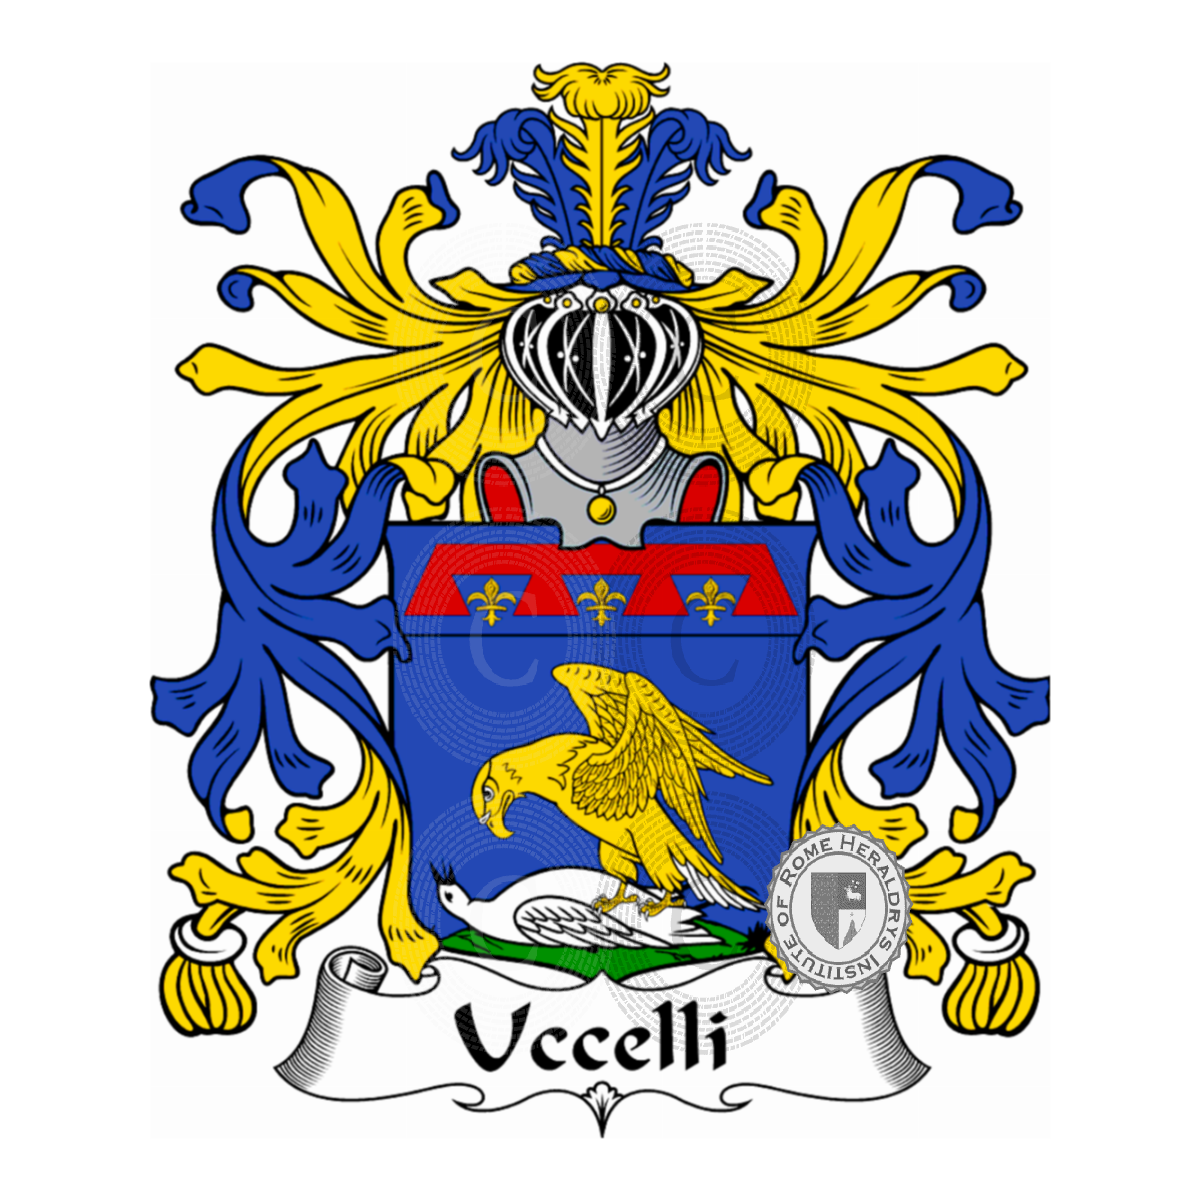 Wappen der FamilieUccelli